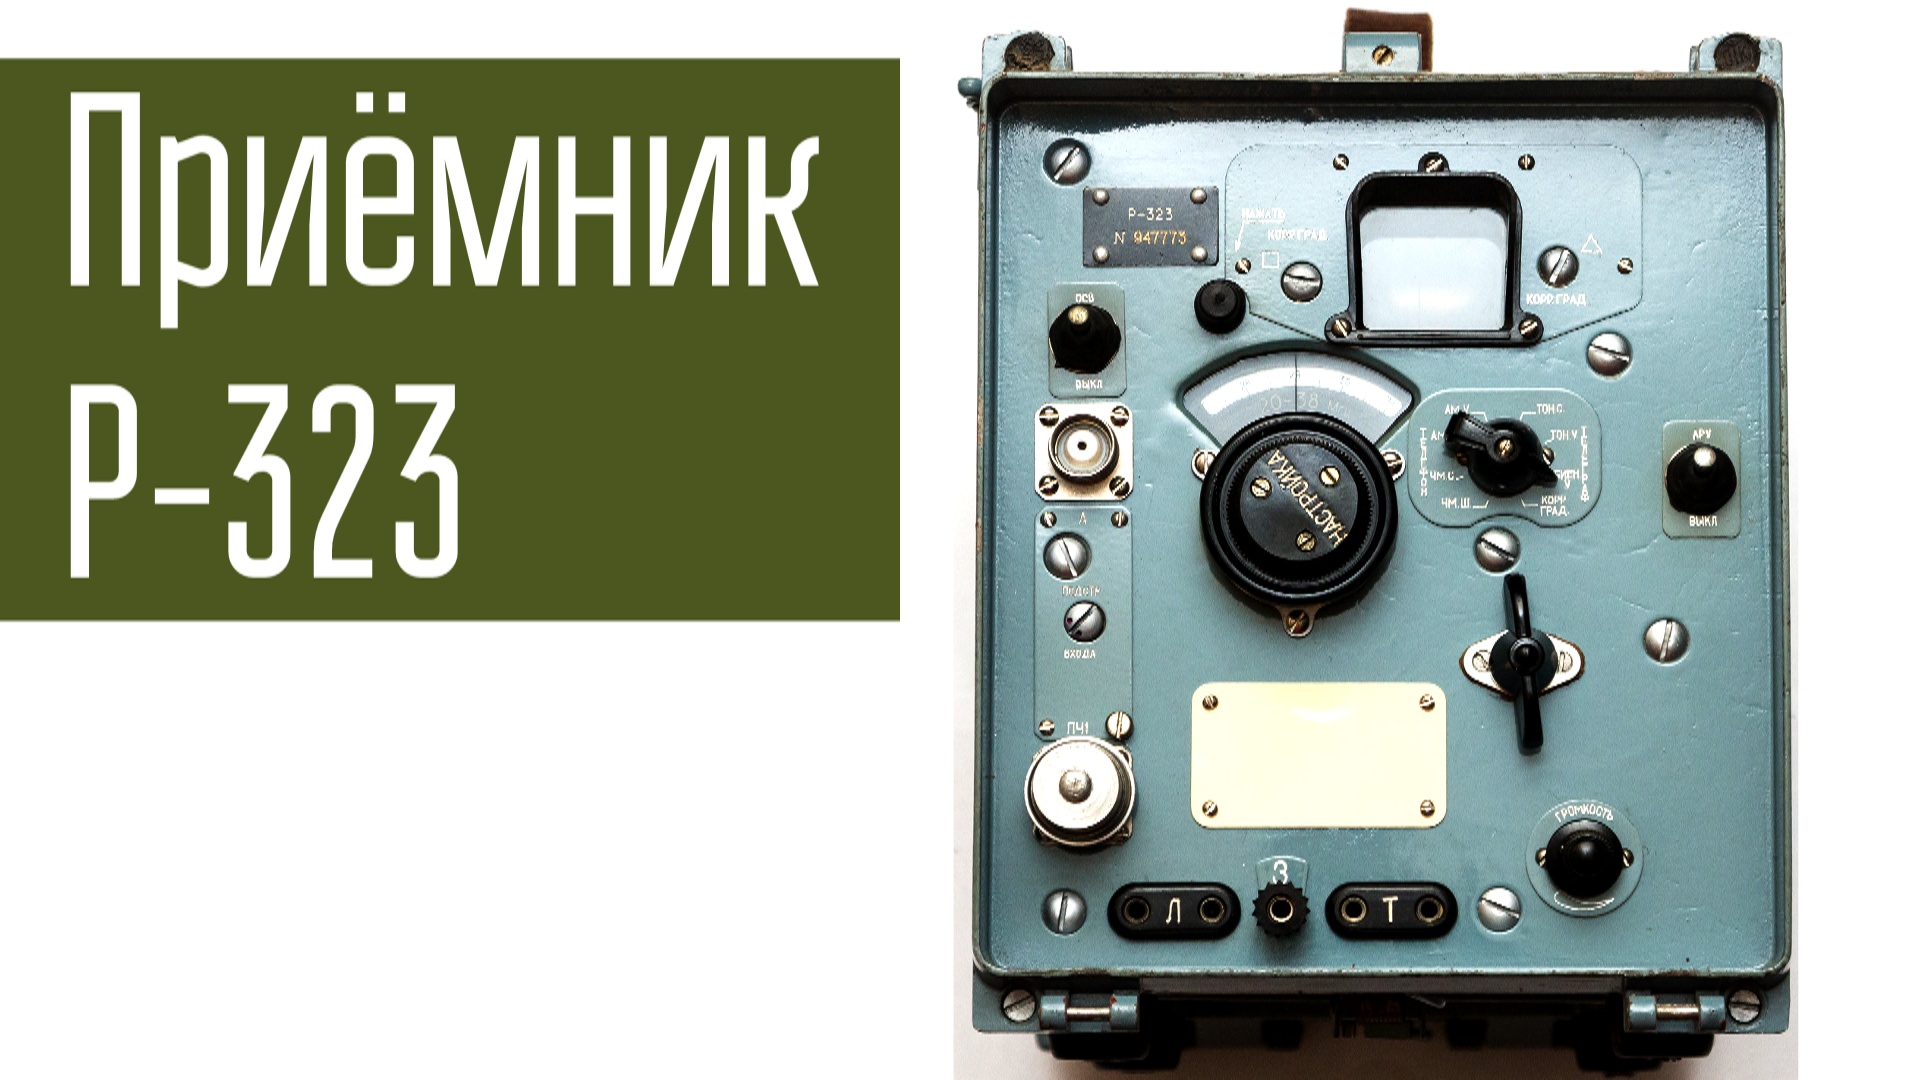 Приёмник Р-323. Ламповый УКВ приёмник. Сделано в СССР.